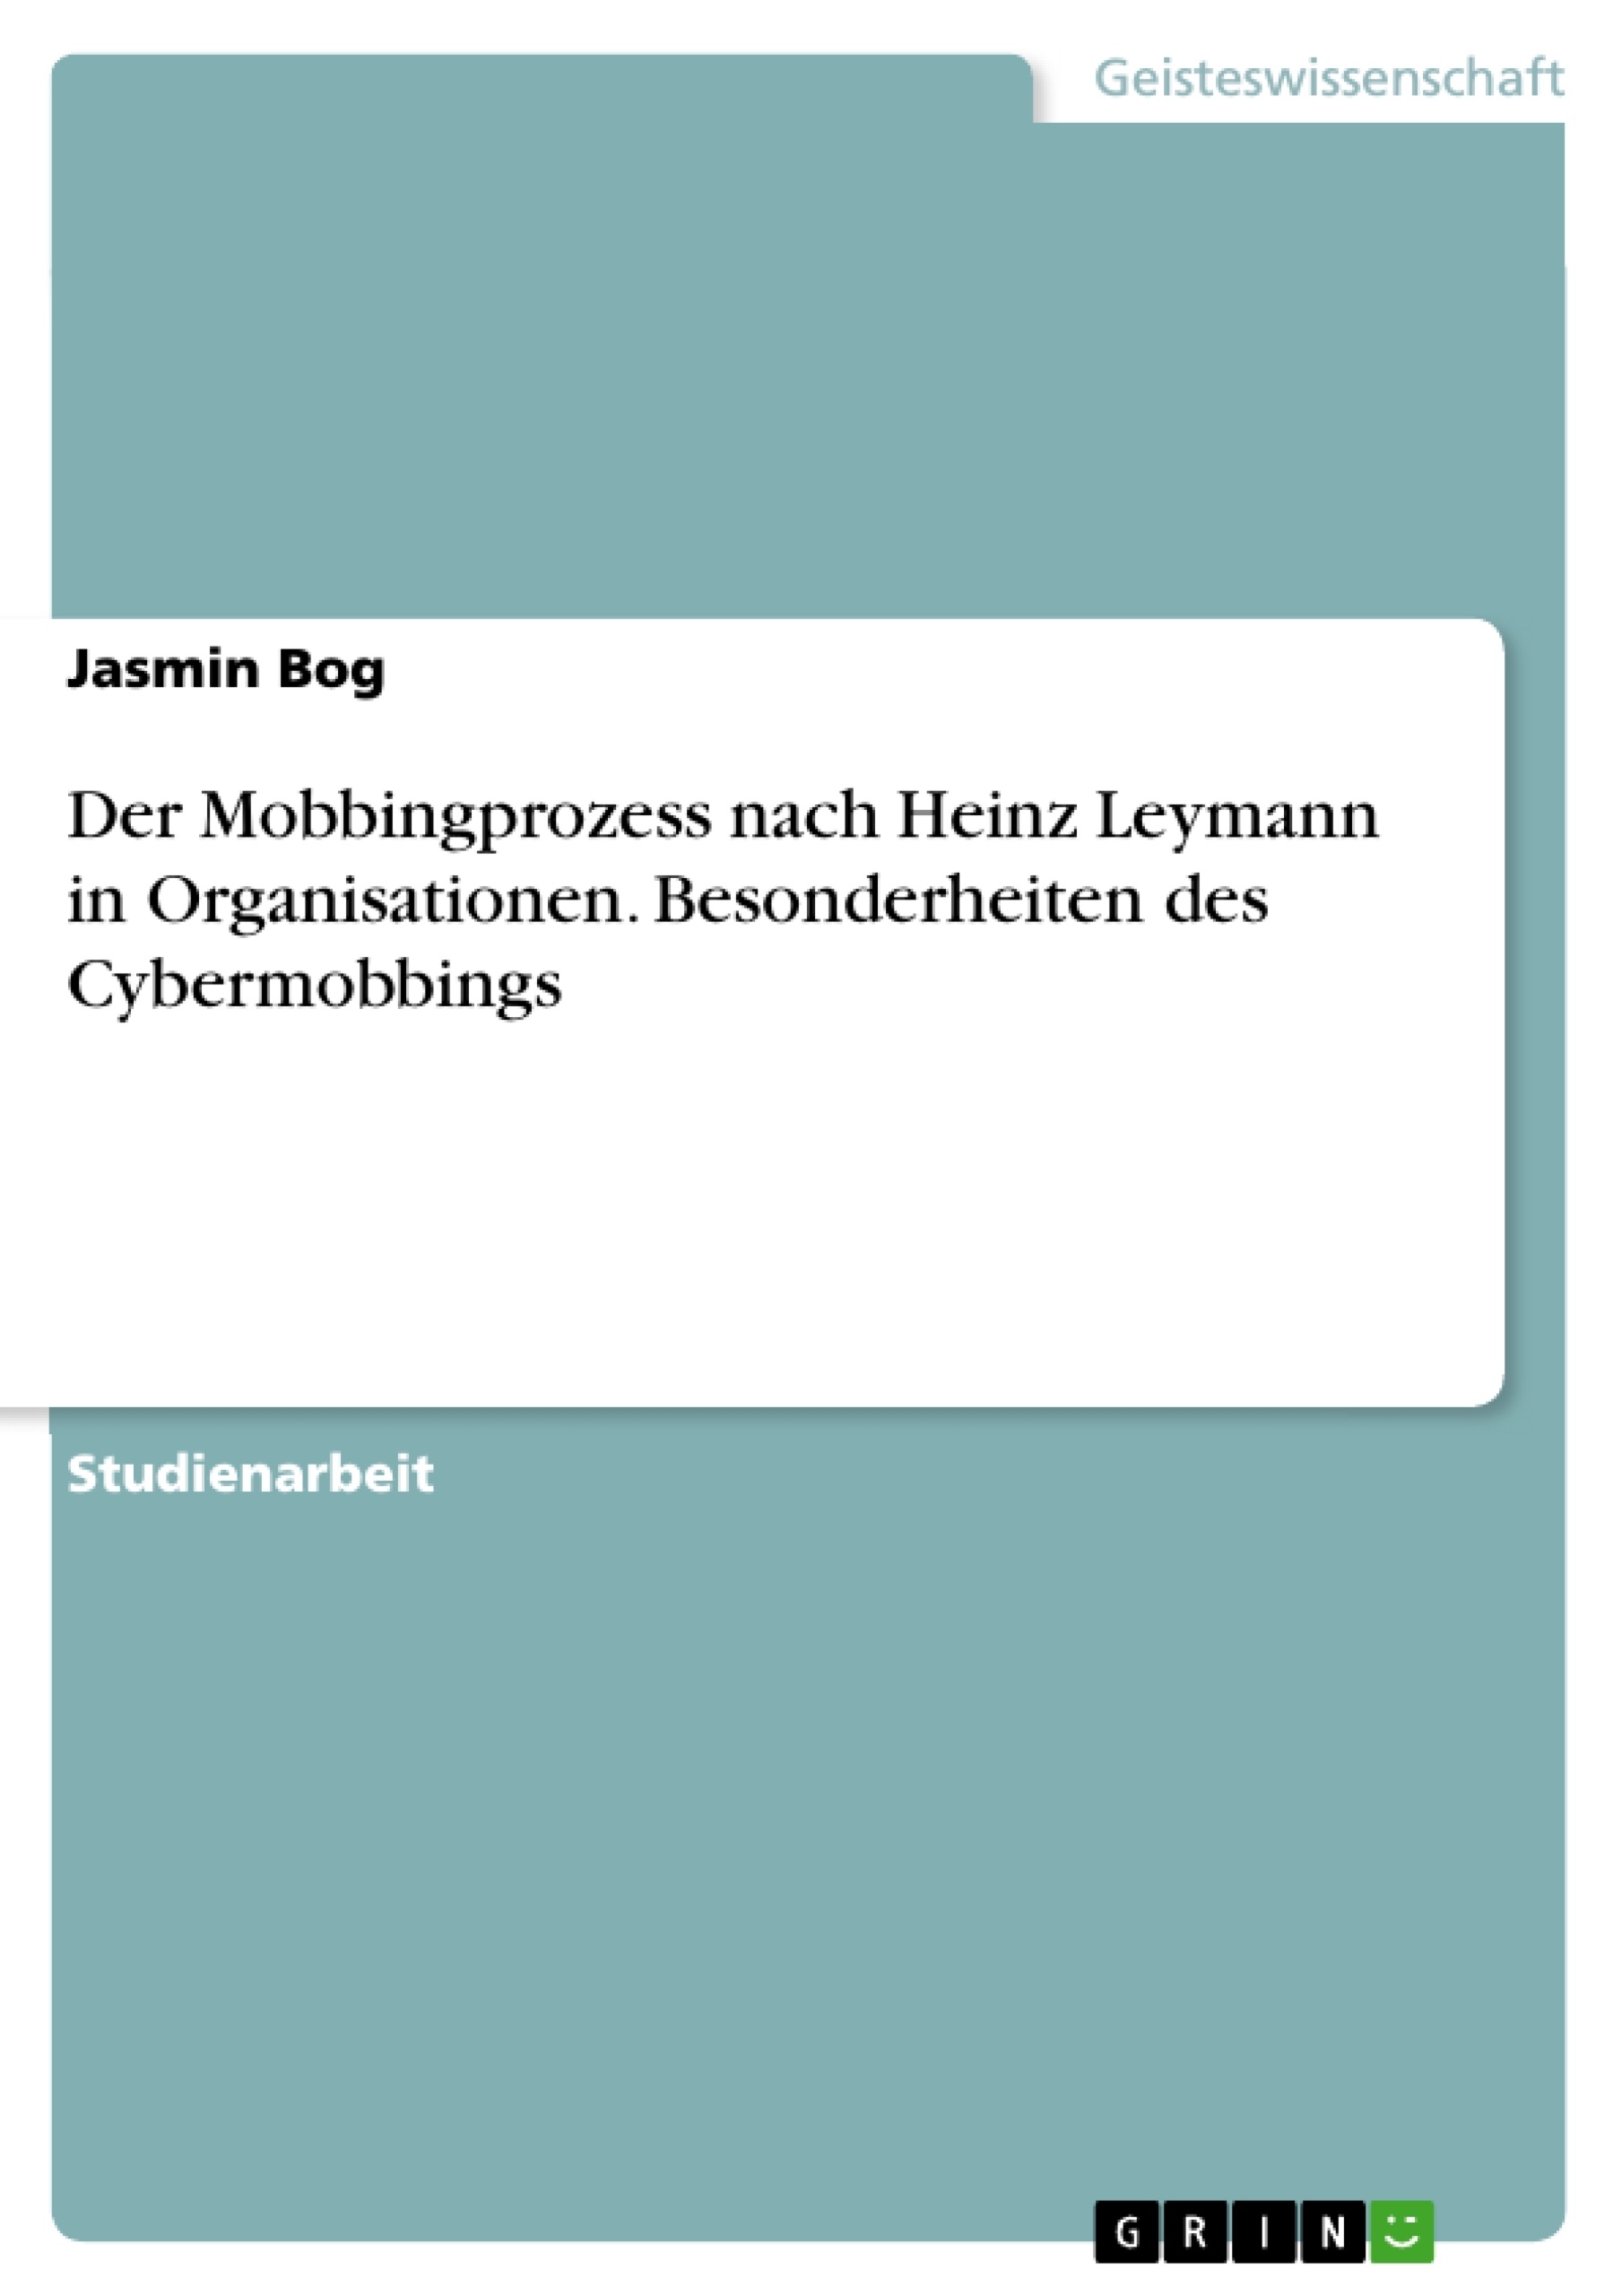 Title: Der Mobbingprozess nach Heinz Leymann in Organisationen. Besonderheiten des Cybermobbings